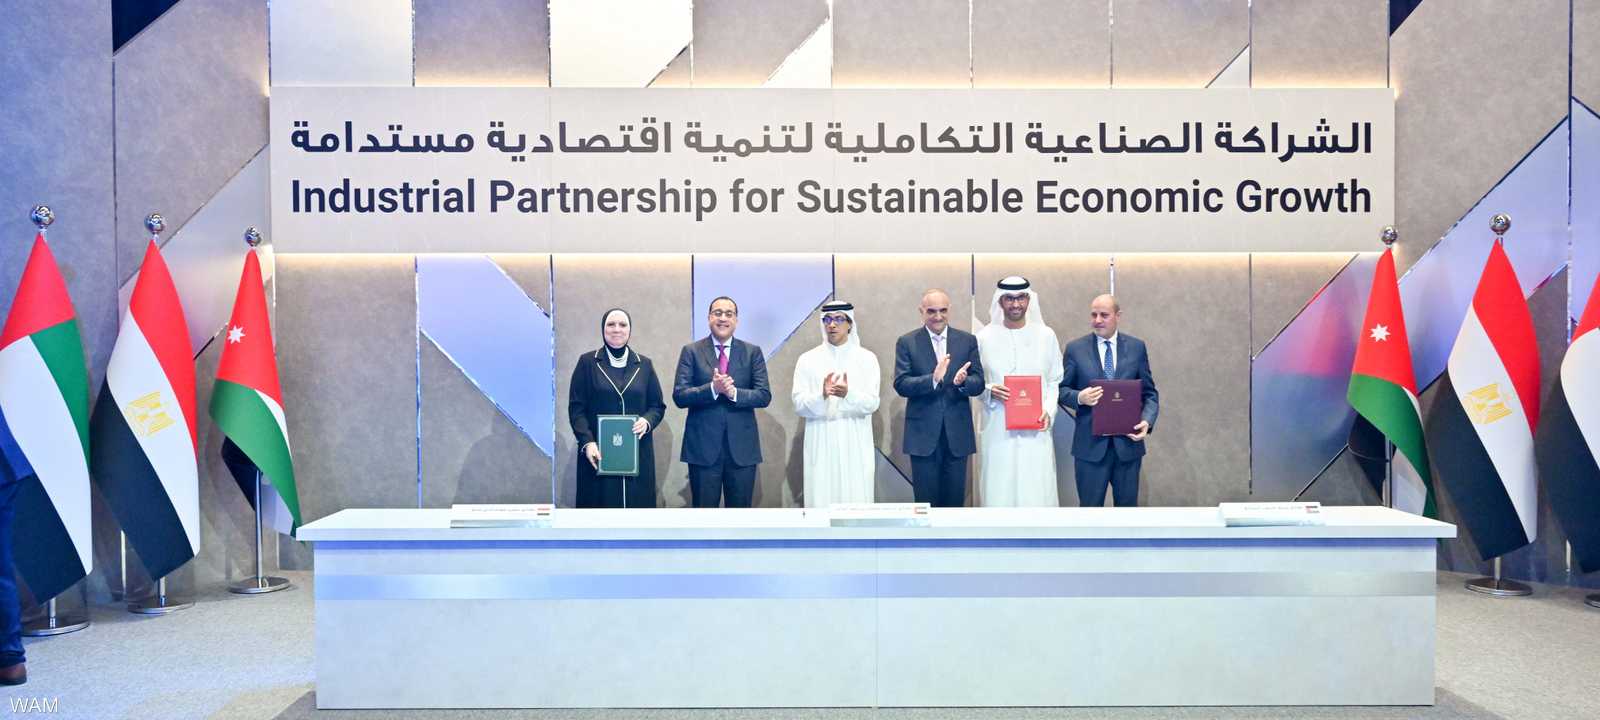 الإعلان عن شراكة صناعية تكاملية بين الإمارات ومصر والأردن